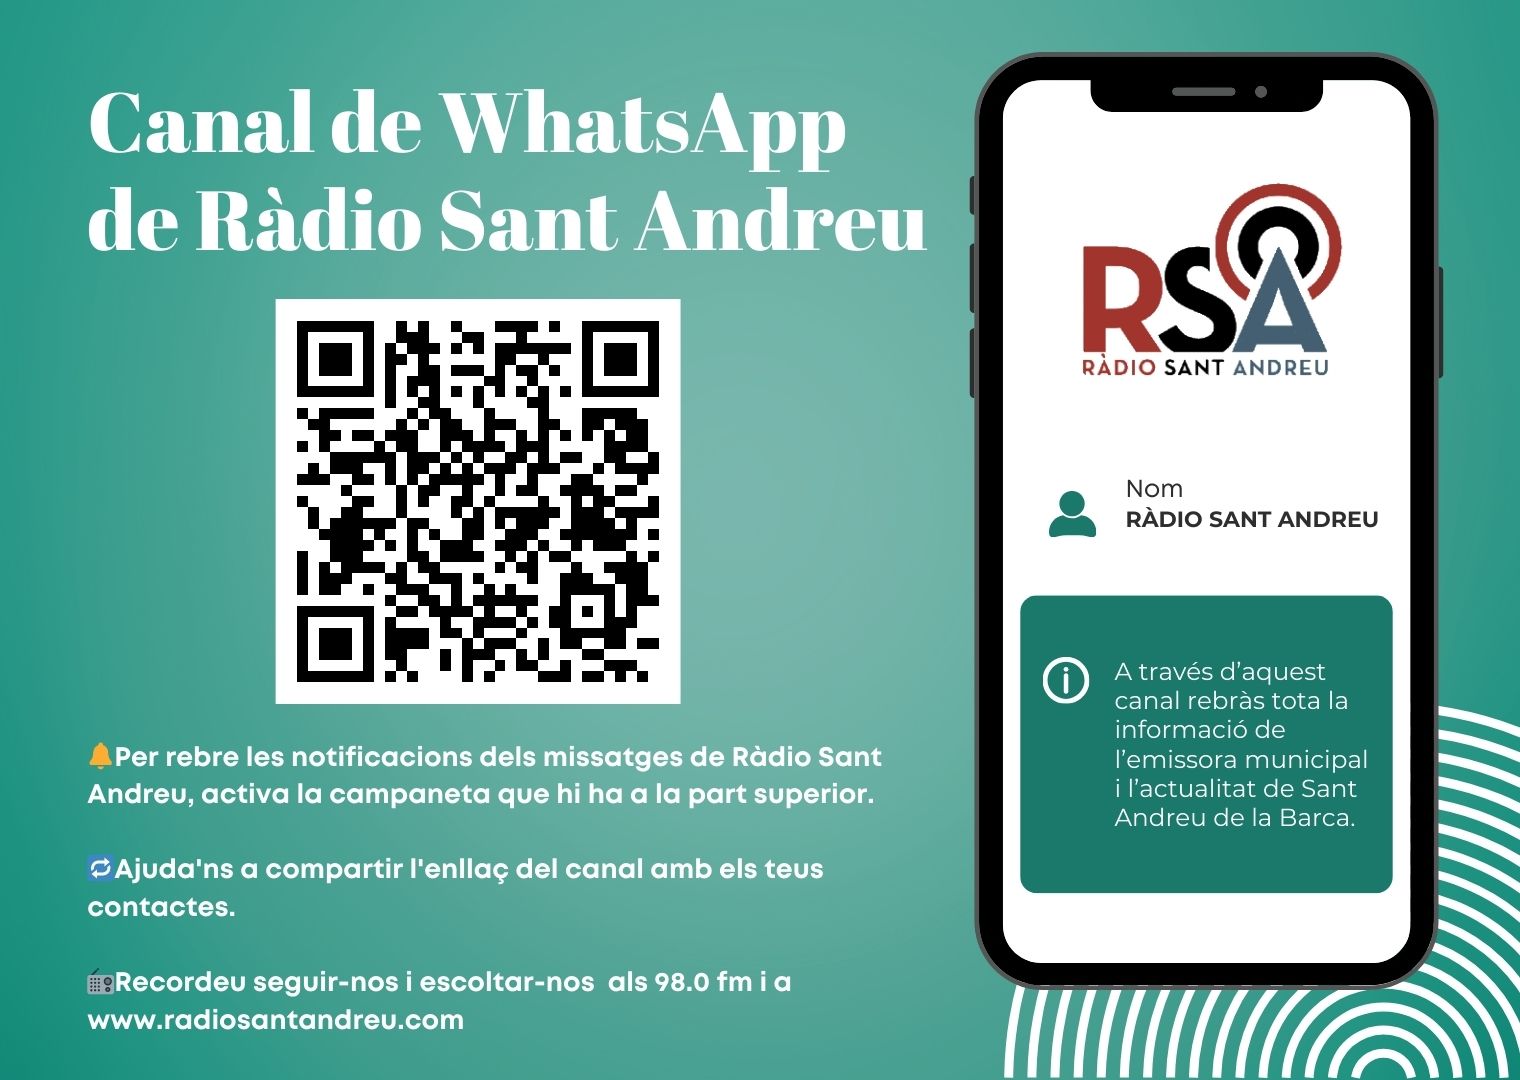 Ràdio Sant Andreu crea el seu propi Canal de WhatsApp